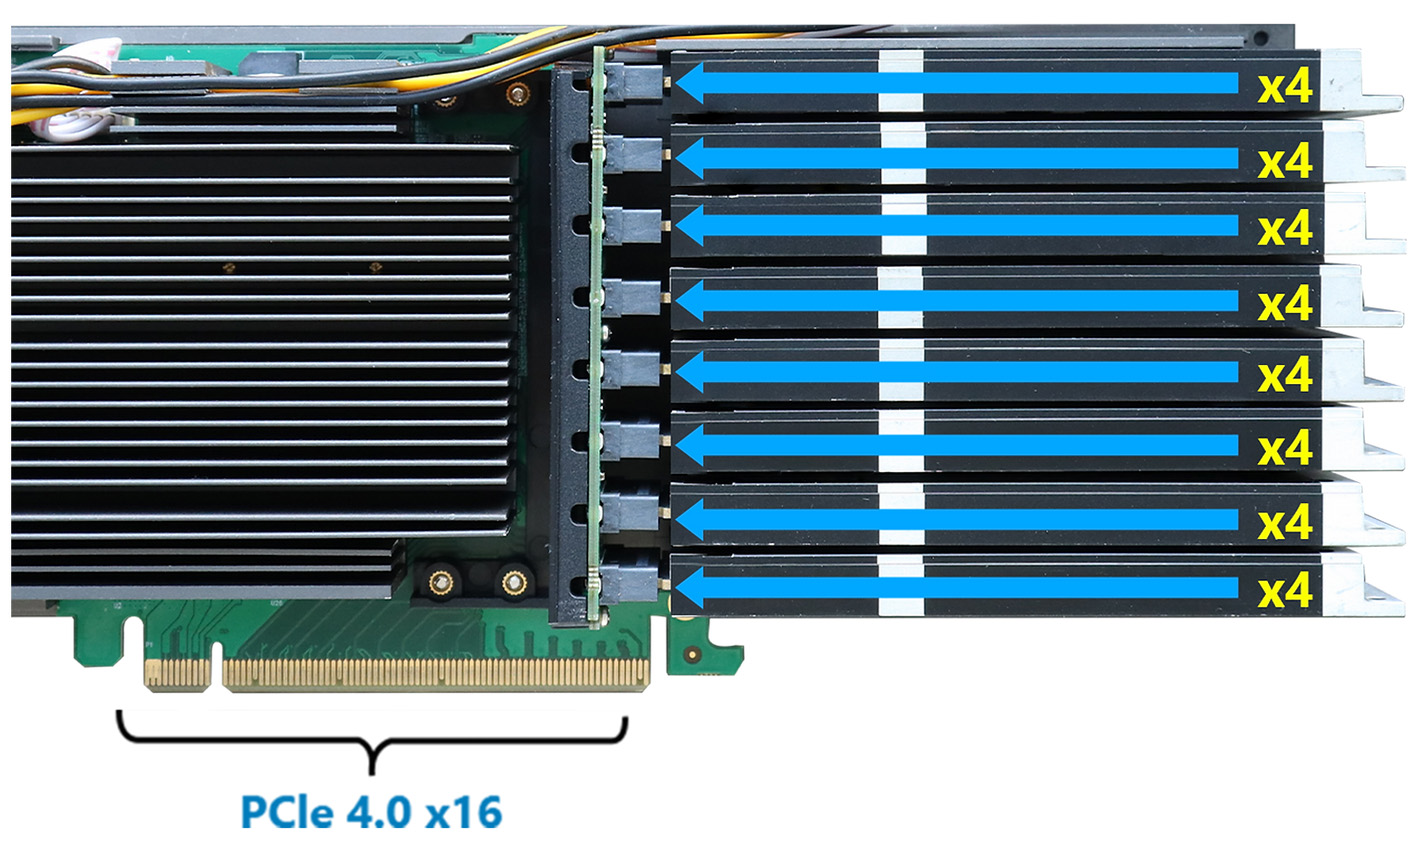 SSD7749E 8x E1.S zu PCIe 4.0 x16 NVMe RAID Controller